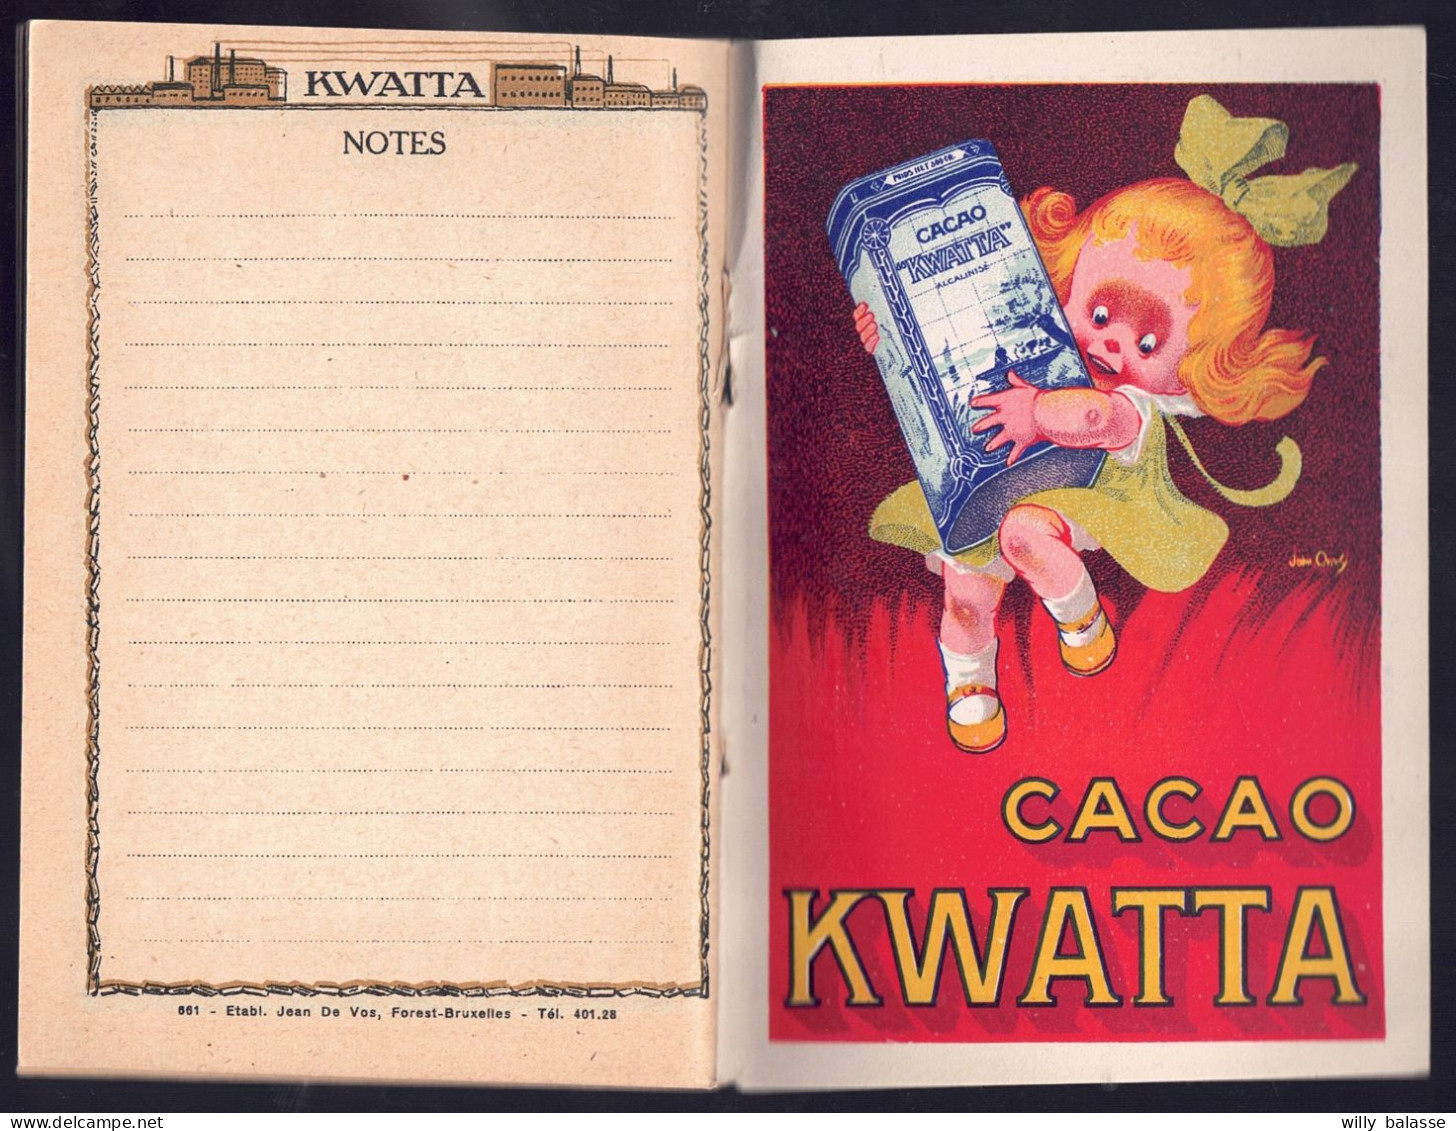 +++ Petit Livre - Livret d'instruction militaire - Publicité Chocolat KWATTA - Militaria - Calendrier 1924 - Agenda //